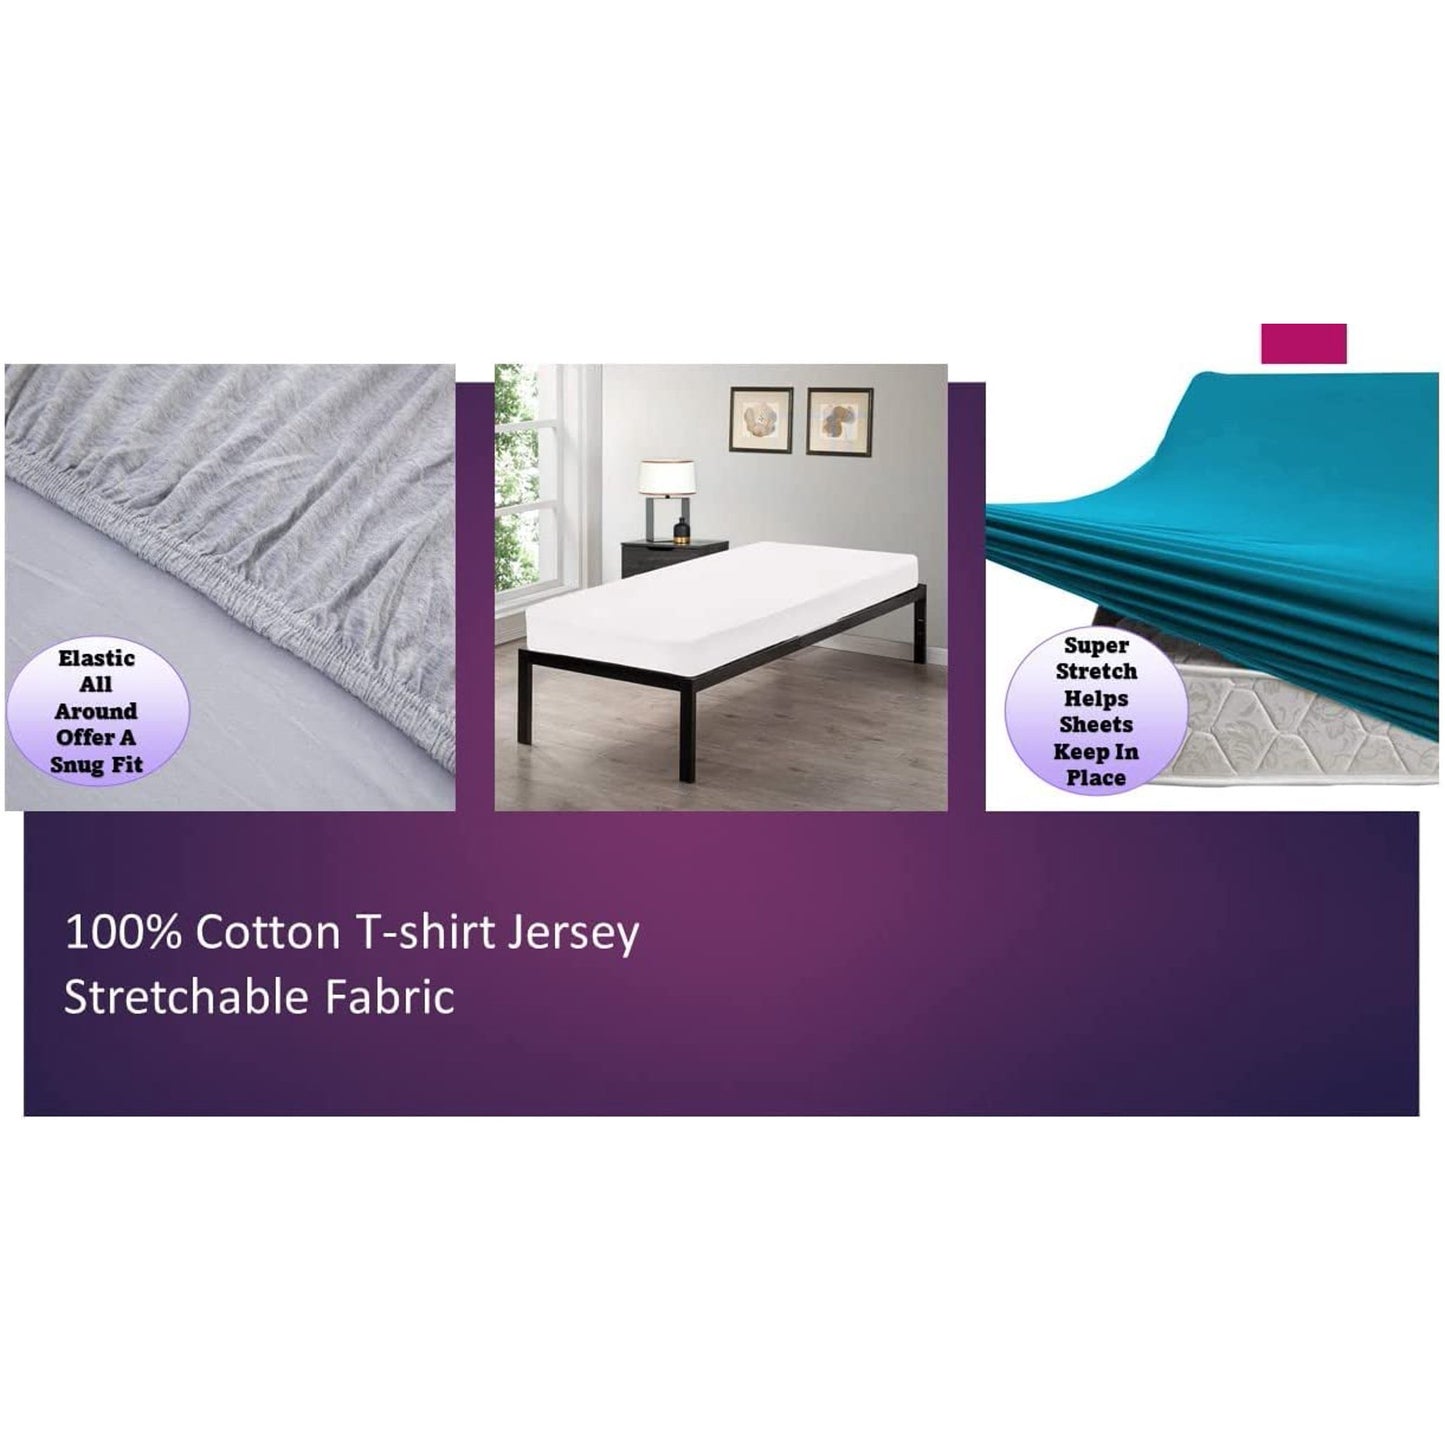 100% Combed T-Shirt Cotton Jersey Knit Camp Sheet Set, 1 Fitted cot Sheet, 1 Flat Sheet, 1 Standard Pillow case Hot Pink